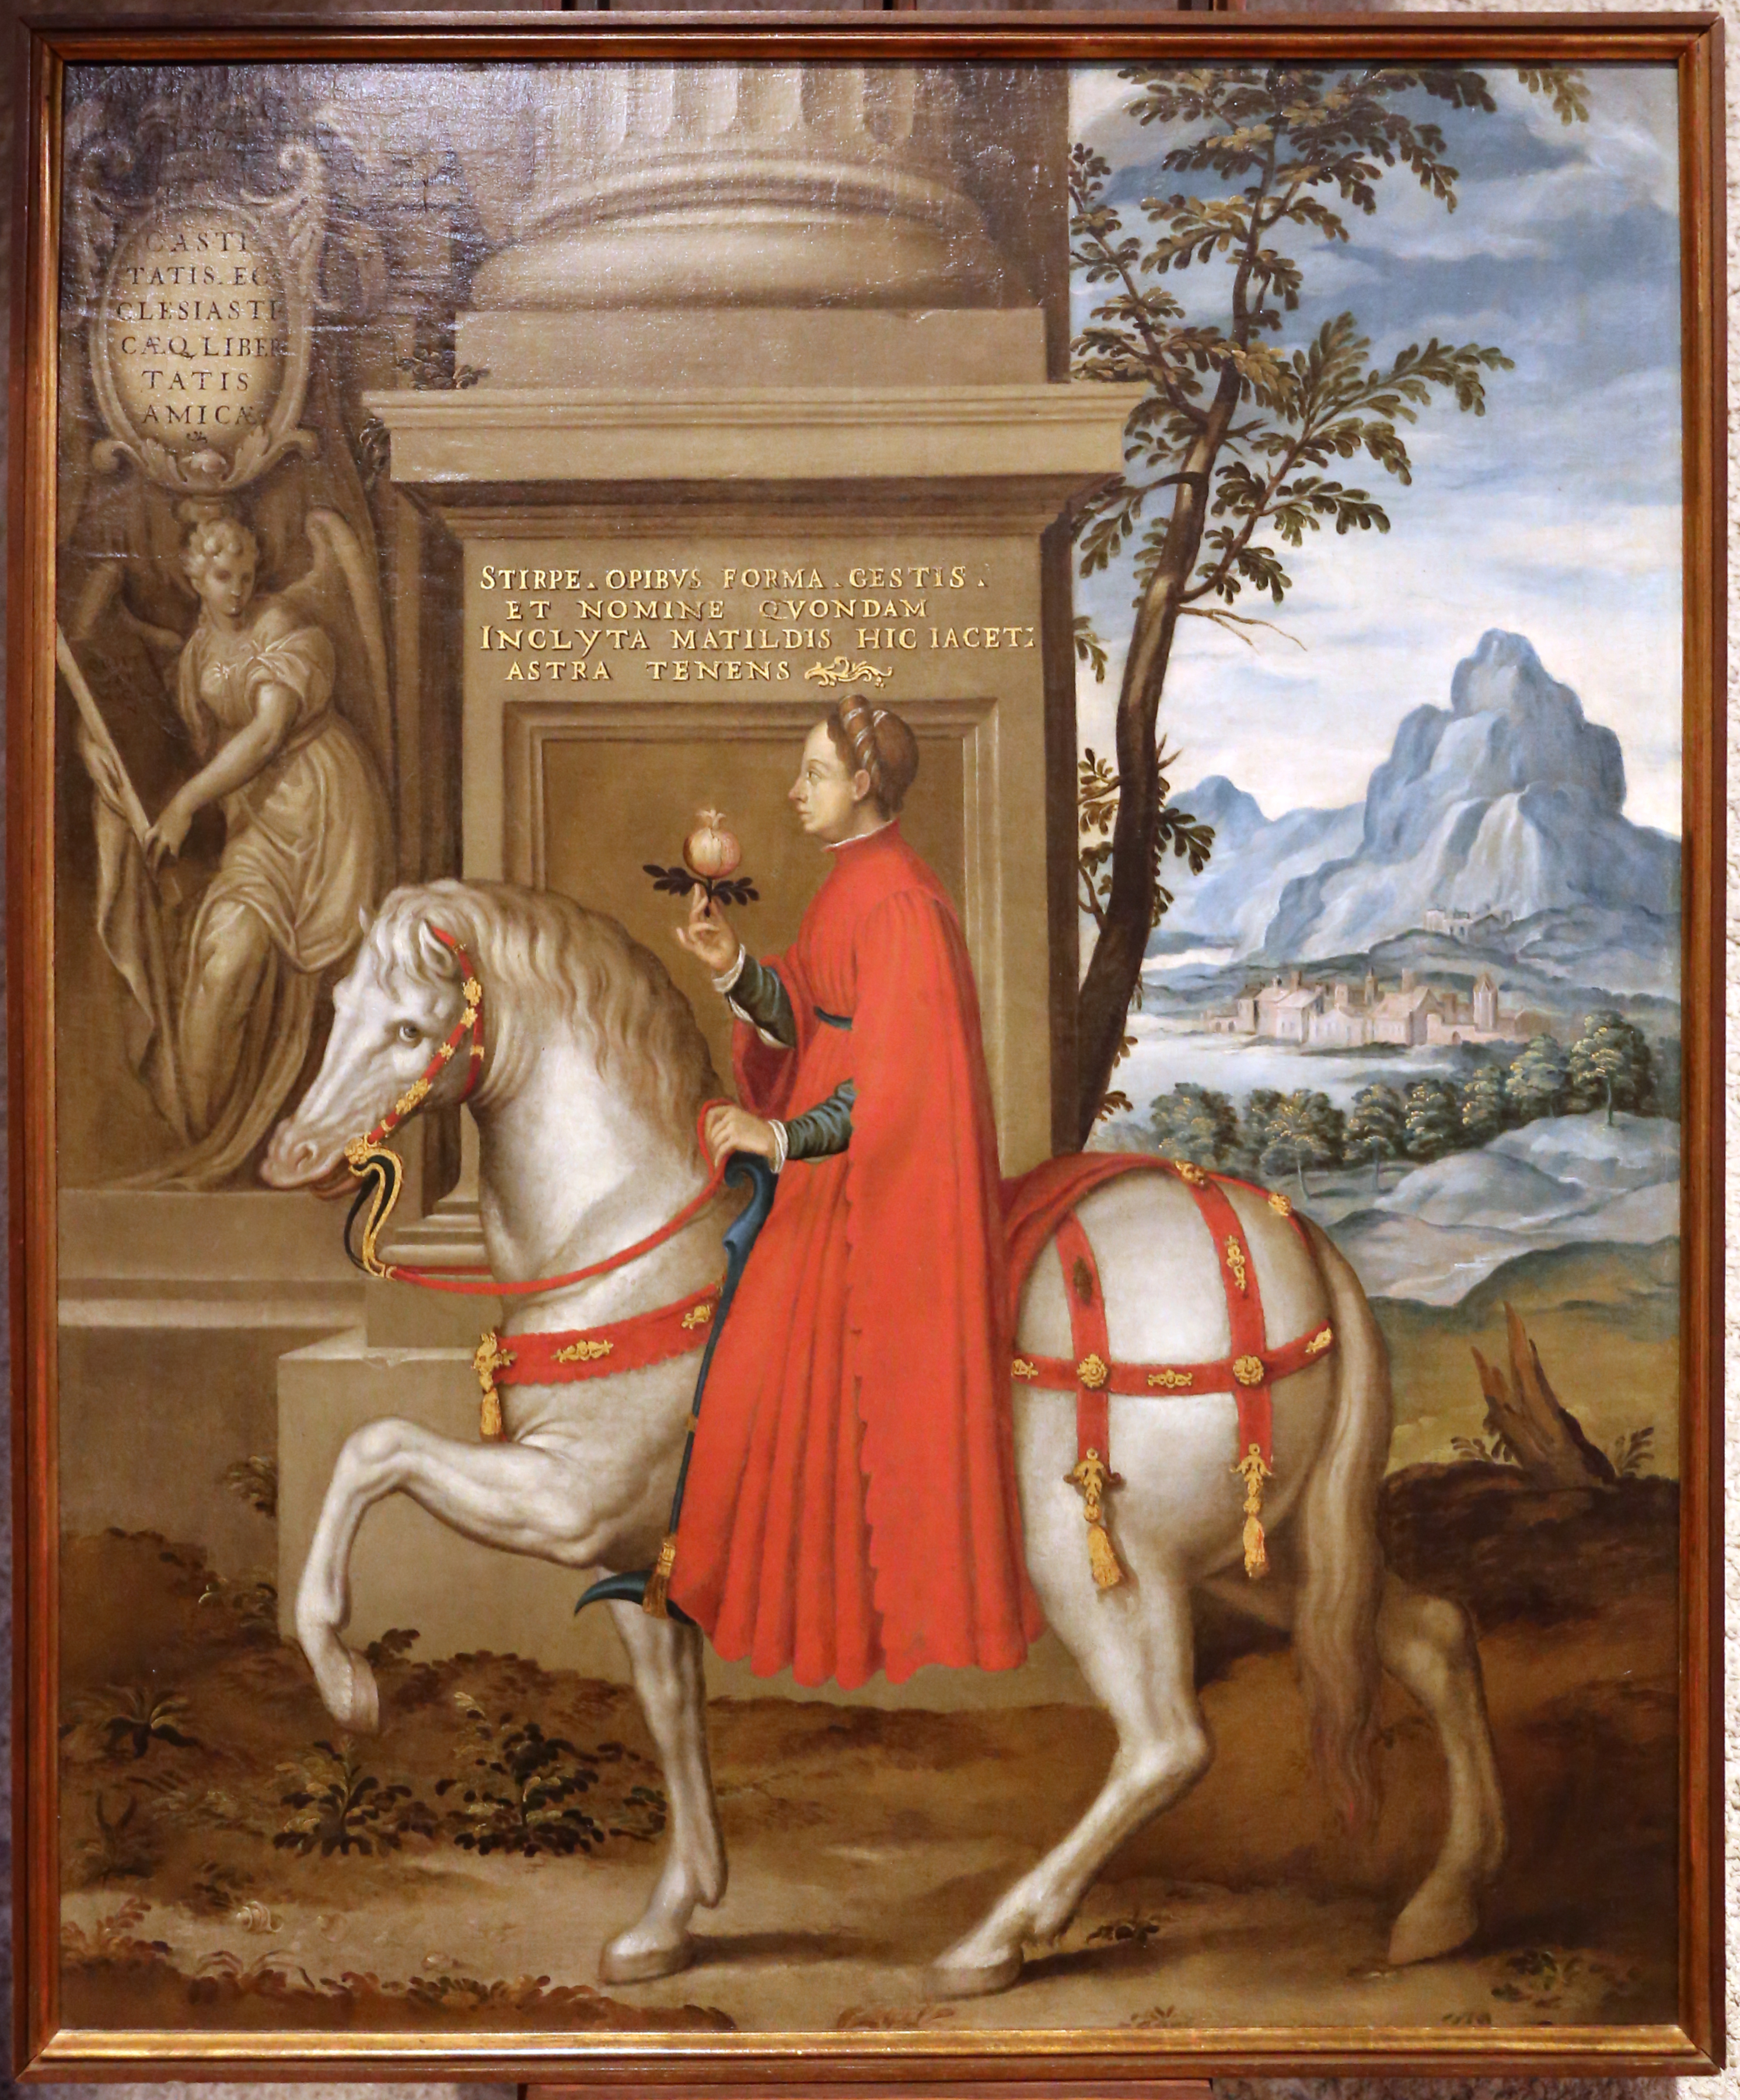 Paolo farinati, ritratto allegorico di matilde di canossa, 1590-1600 ca.